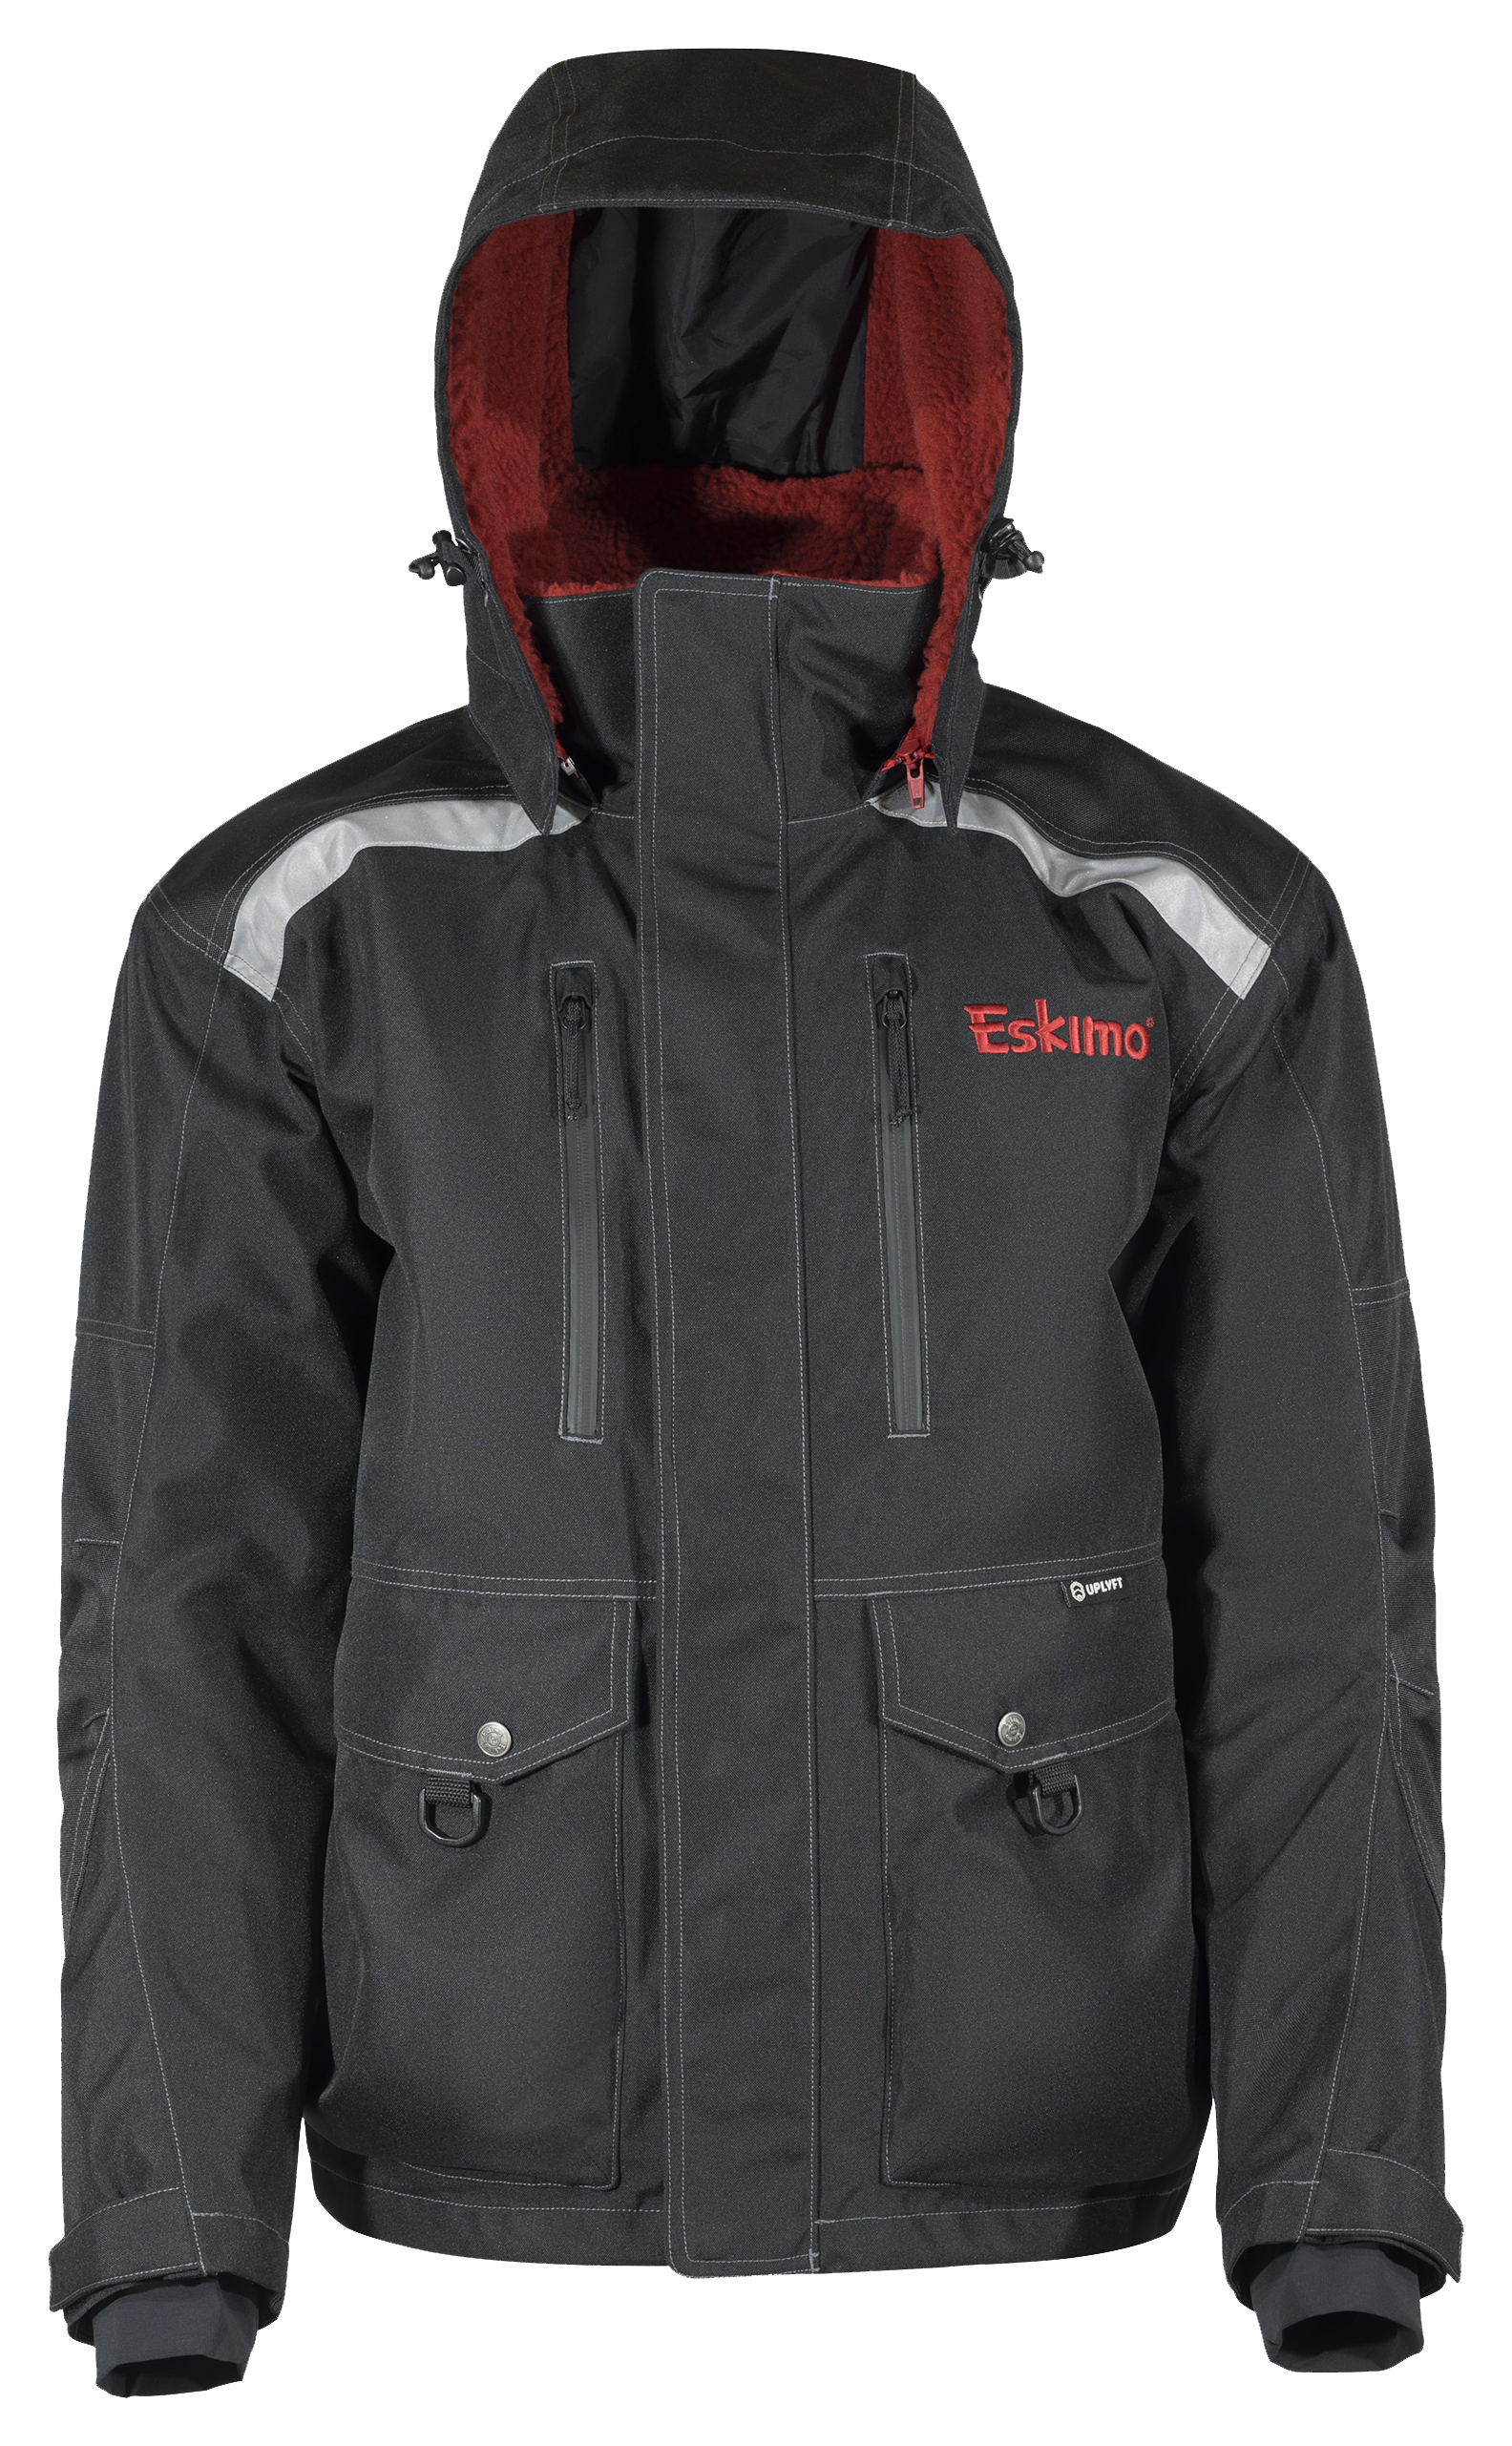 Eskimo Roughneck Jacket for Men